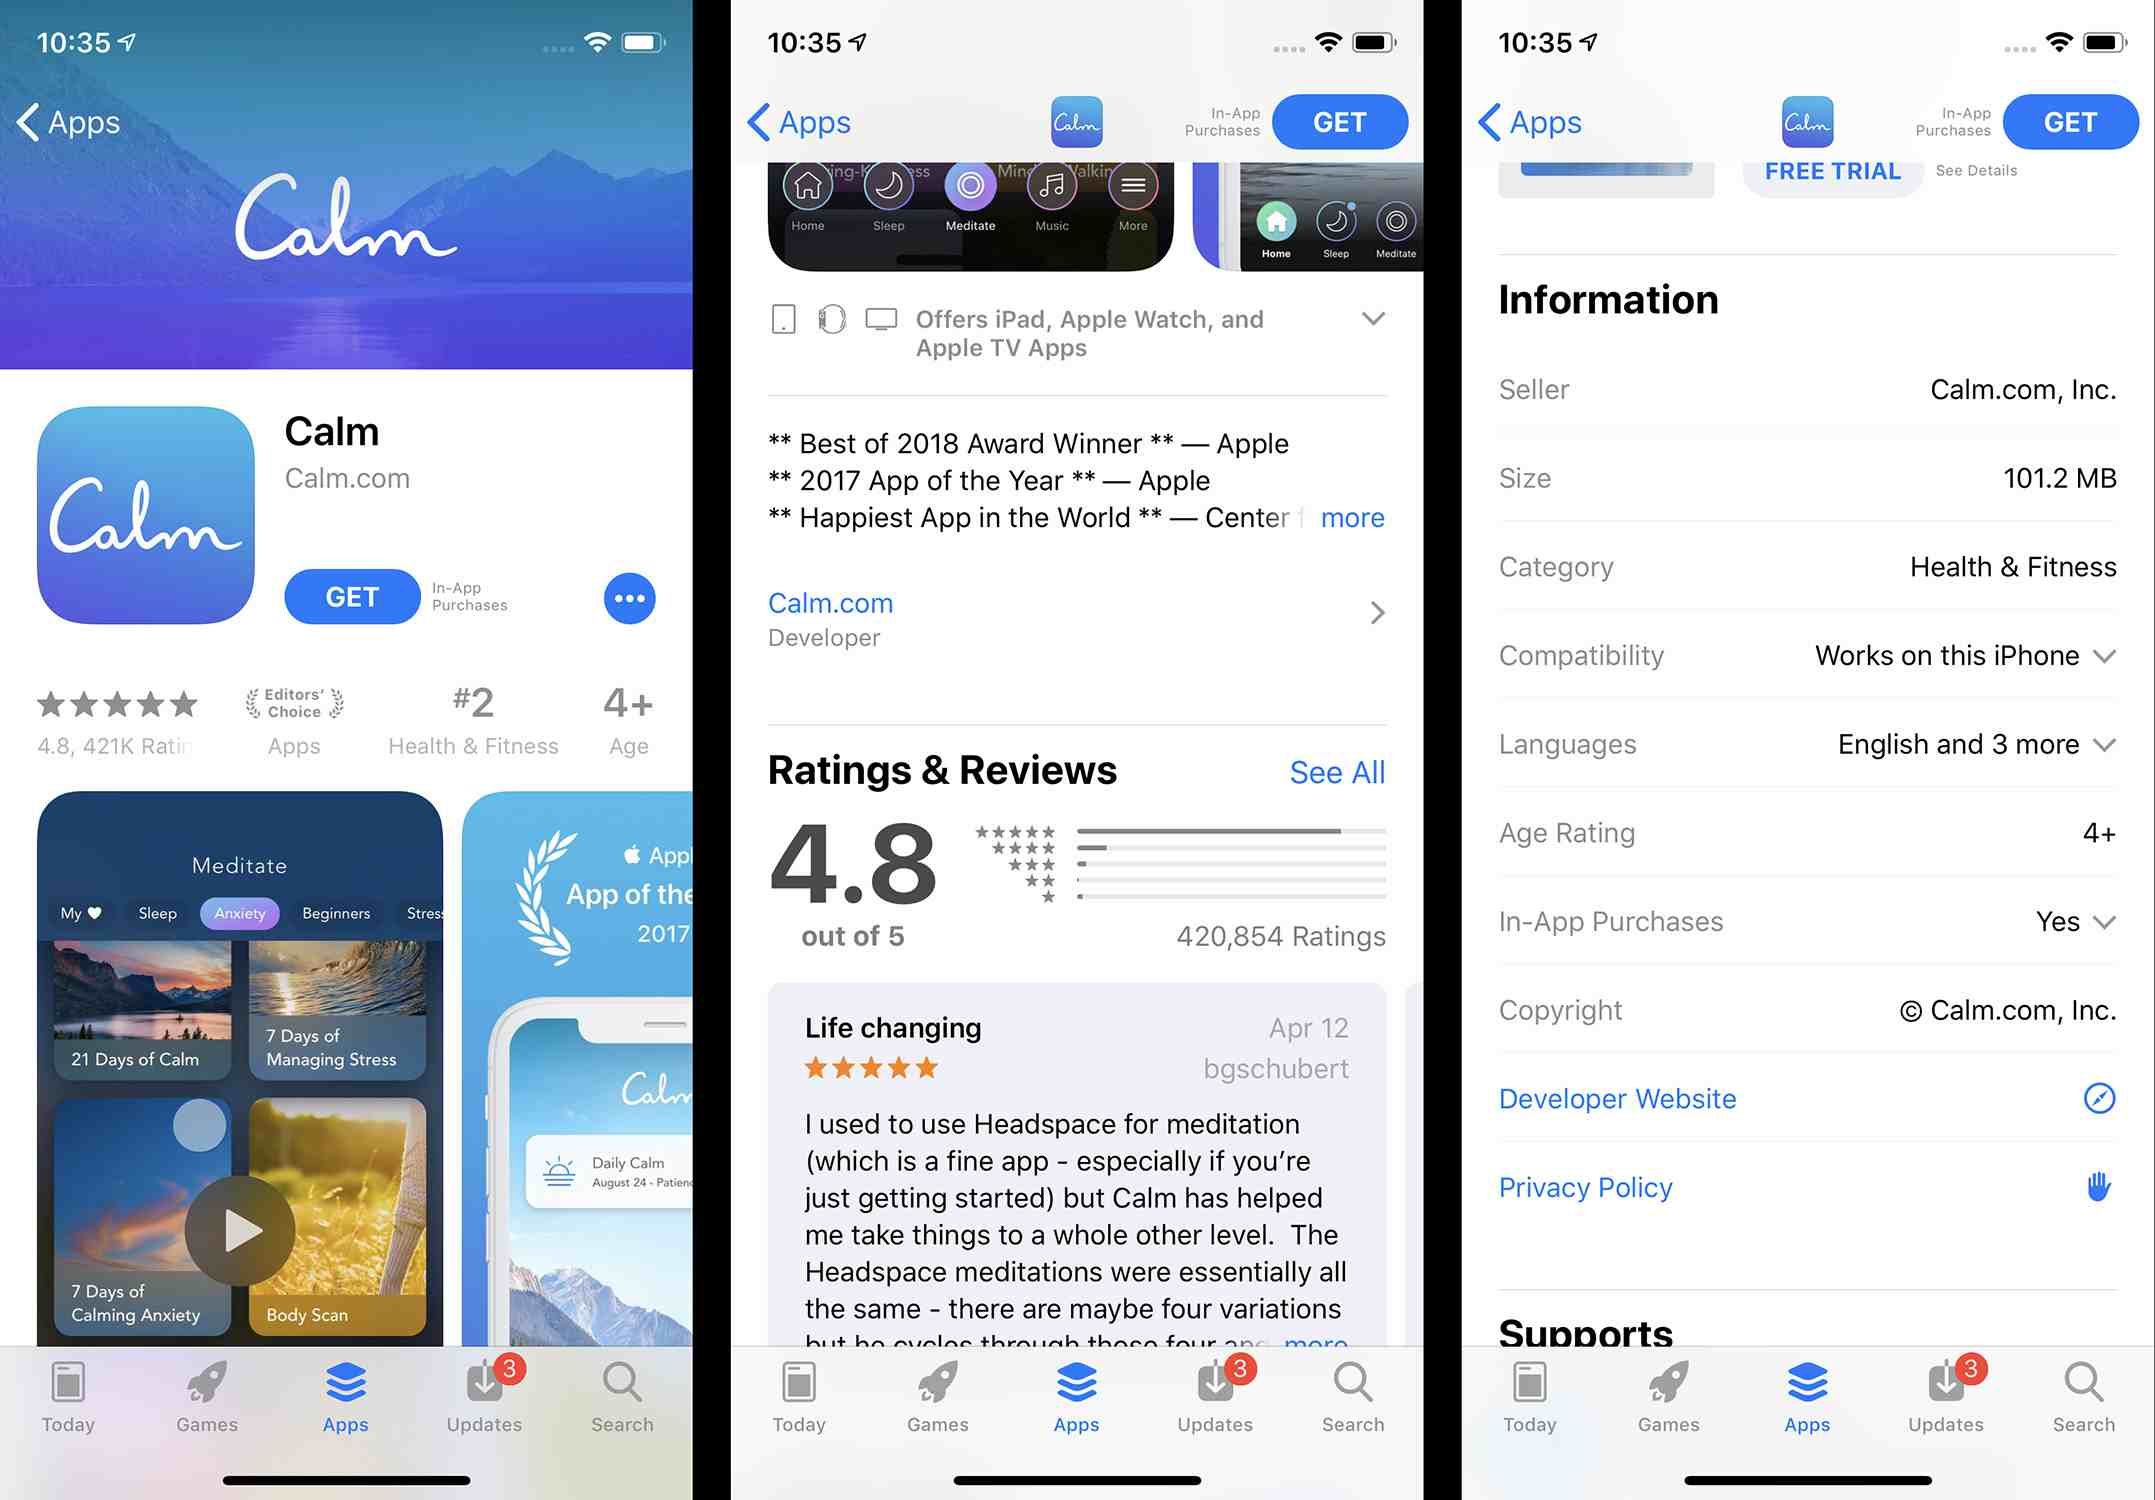 Снимки экрана с подробным описанием приложения в App Store